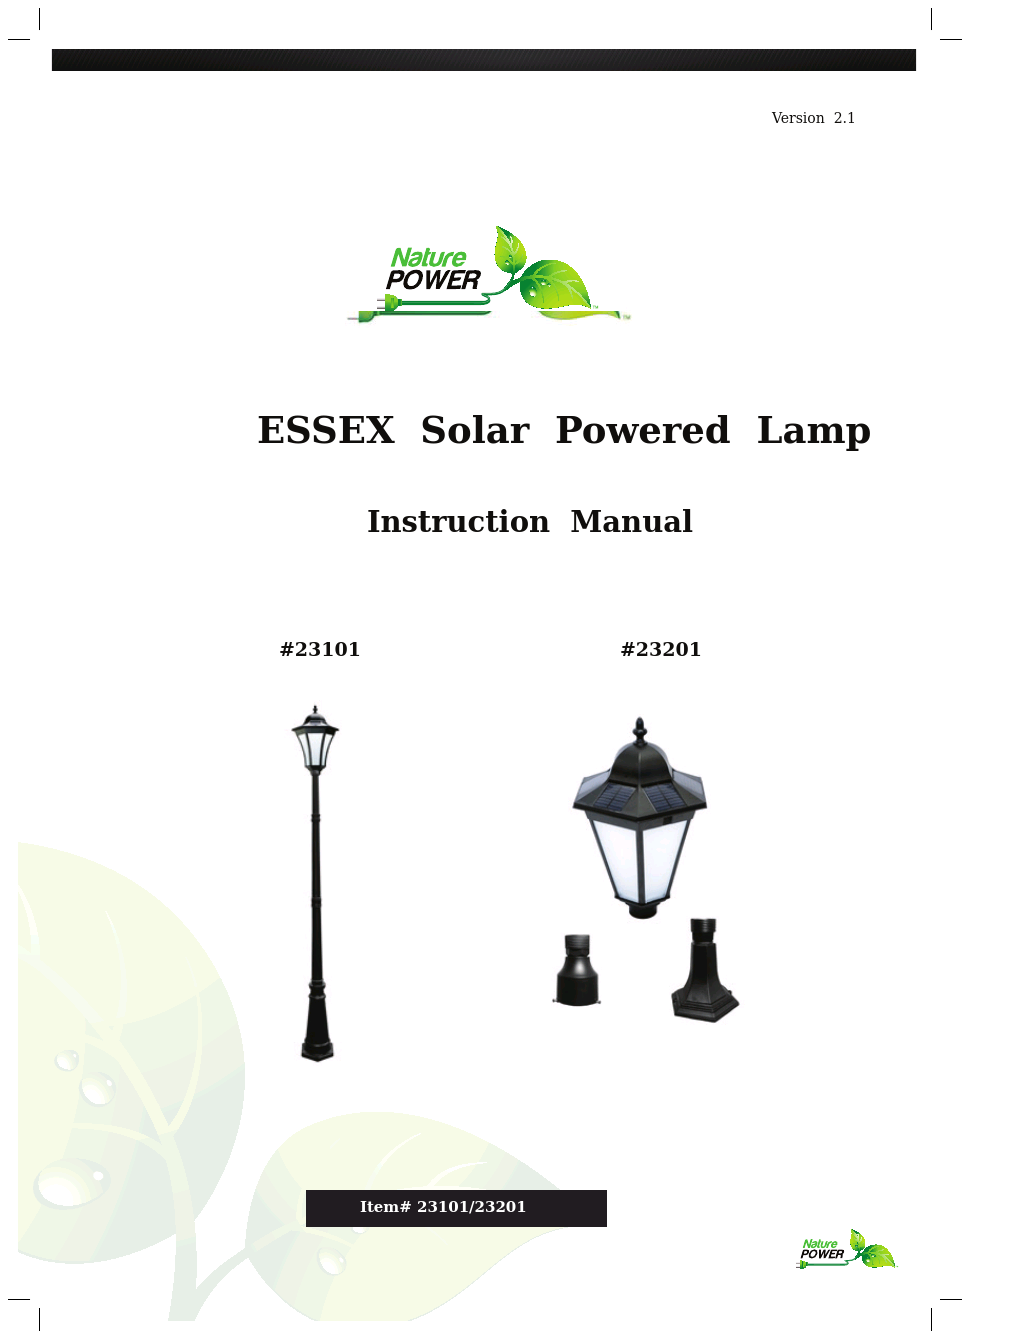 ESSEX Solar Powered Lamp (23201)